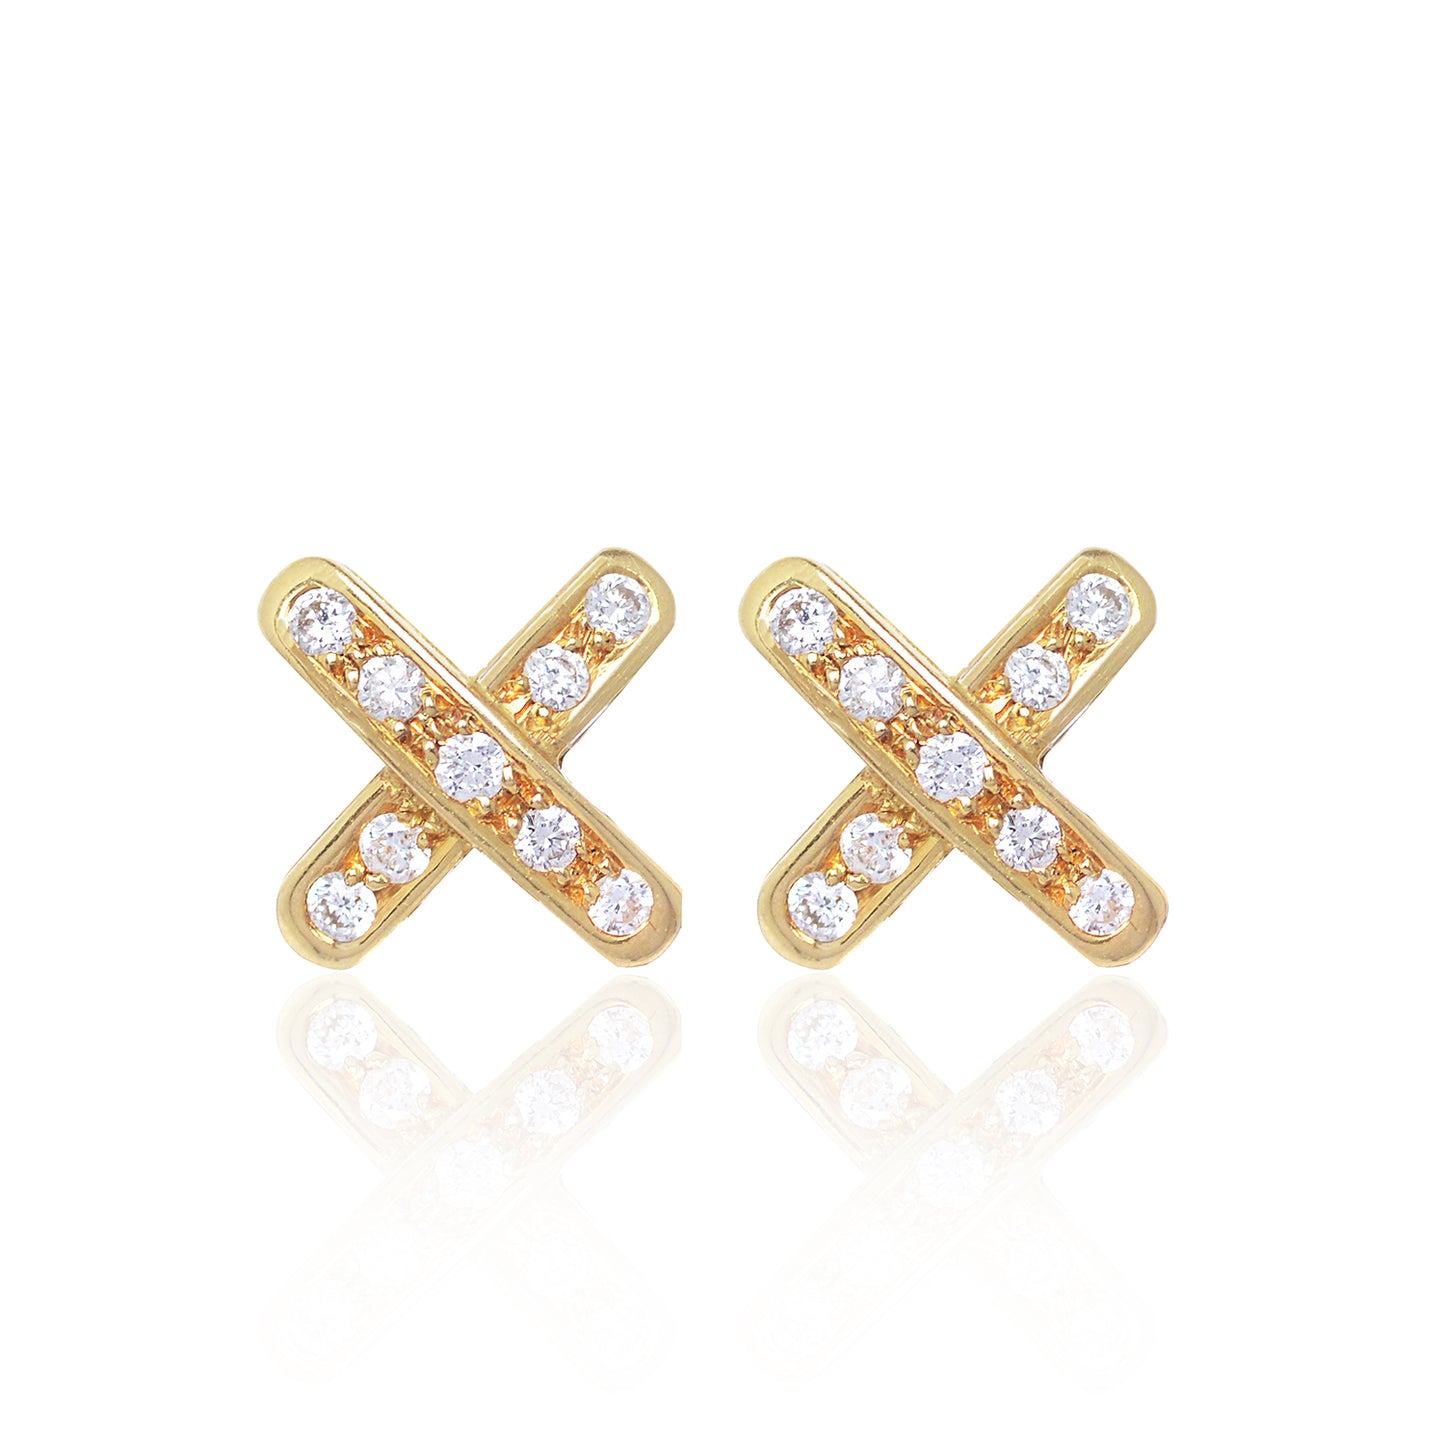 Diamond Cross Earrings by McFarlane Fine Jewellery in 18ct yellow gold